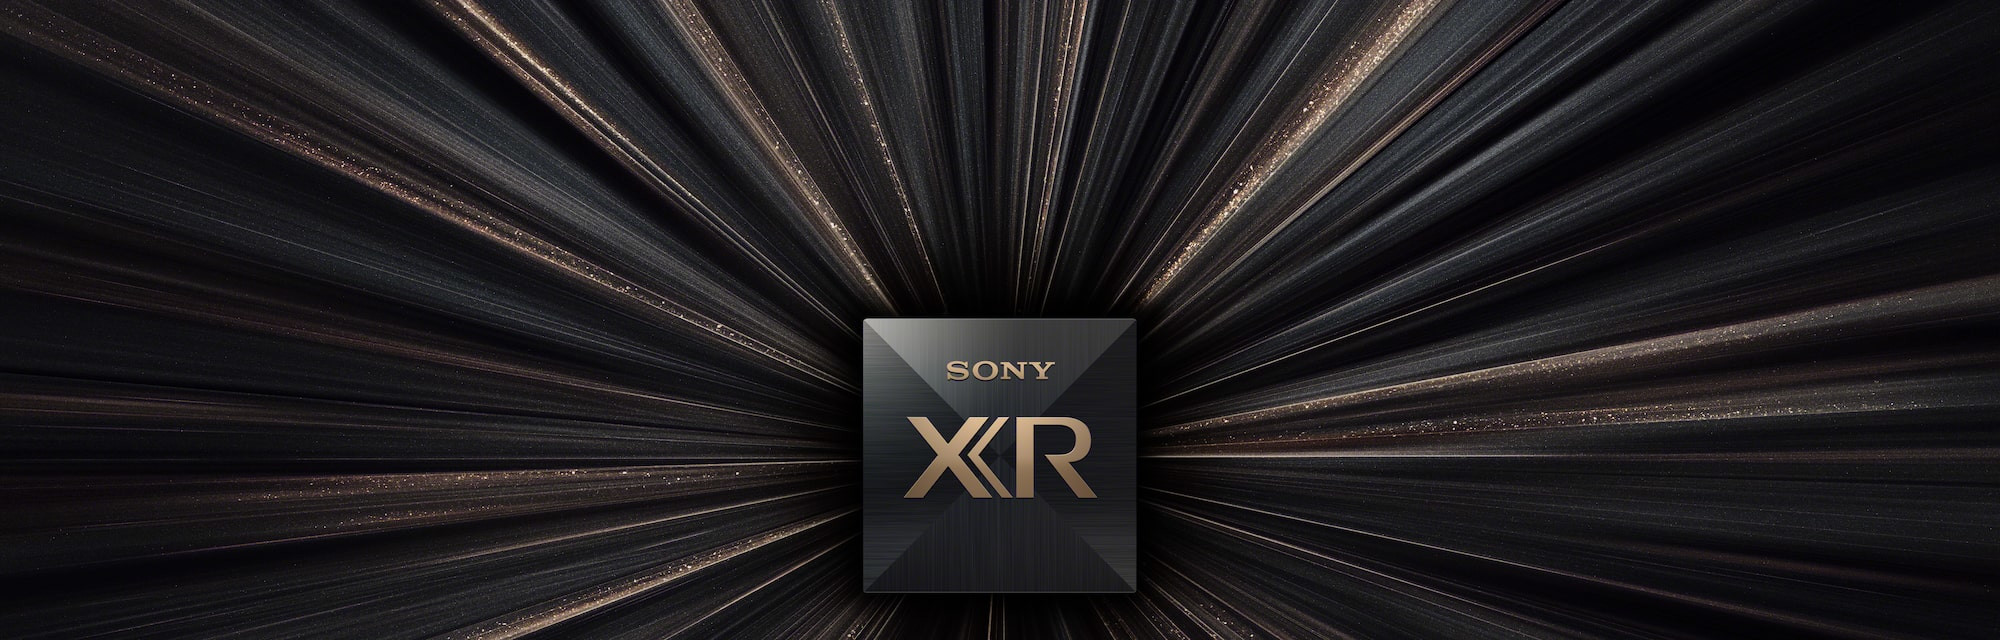 X95J | BRAVIA XR | Full Array LED | 4K Ultra HD | High Dynamic Range (HDR) | Smart TV (Google TV)